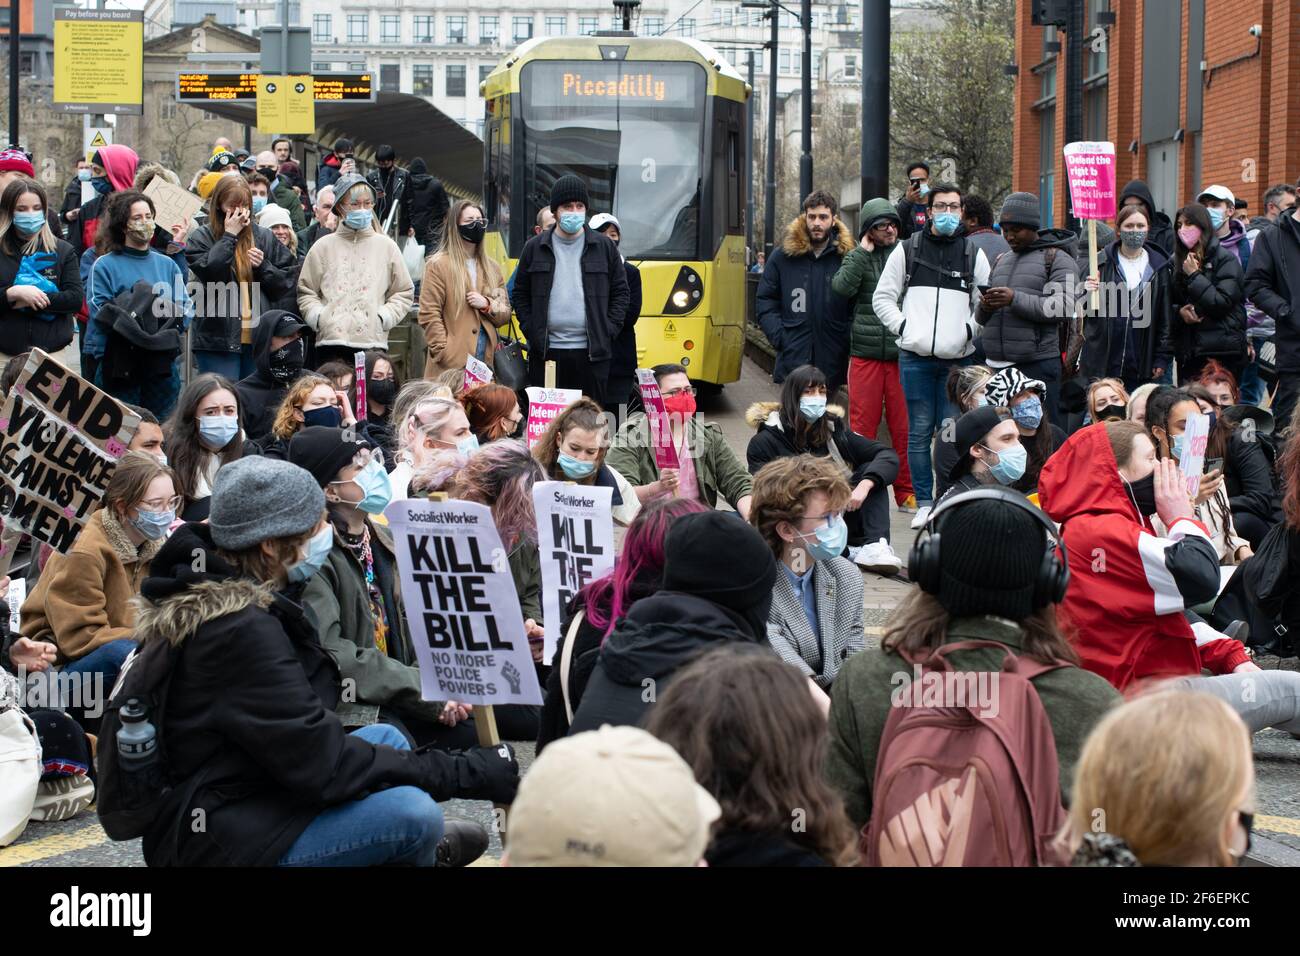 Uccidere la protesta di Bill, Manchester, Regno Unito. La fermata PiccadillyMetrolink con i dimostranti che bloccano il tram Piccadilly durante il blocco nazionale in Inghilterra. Foto Stock